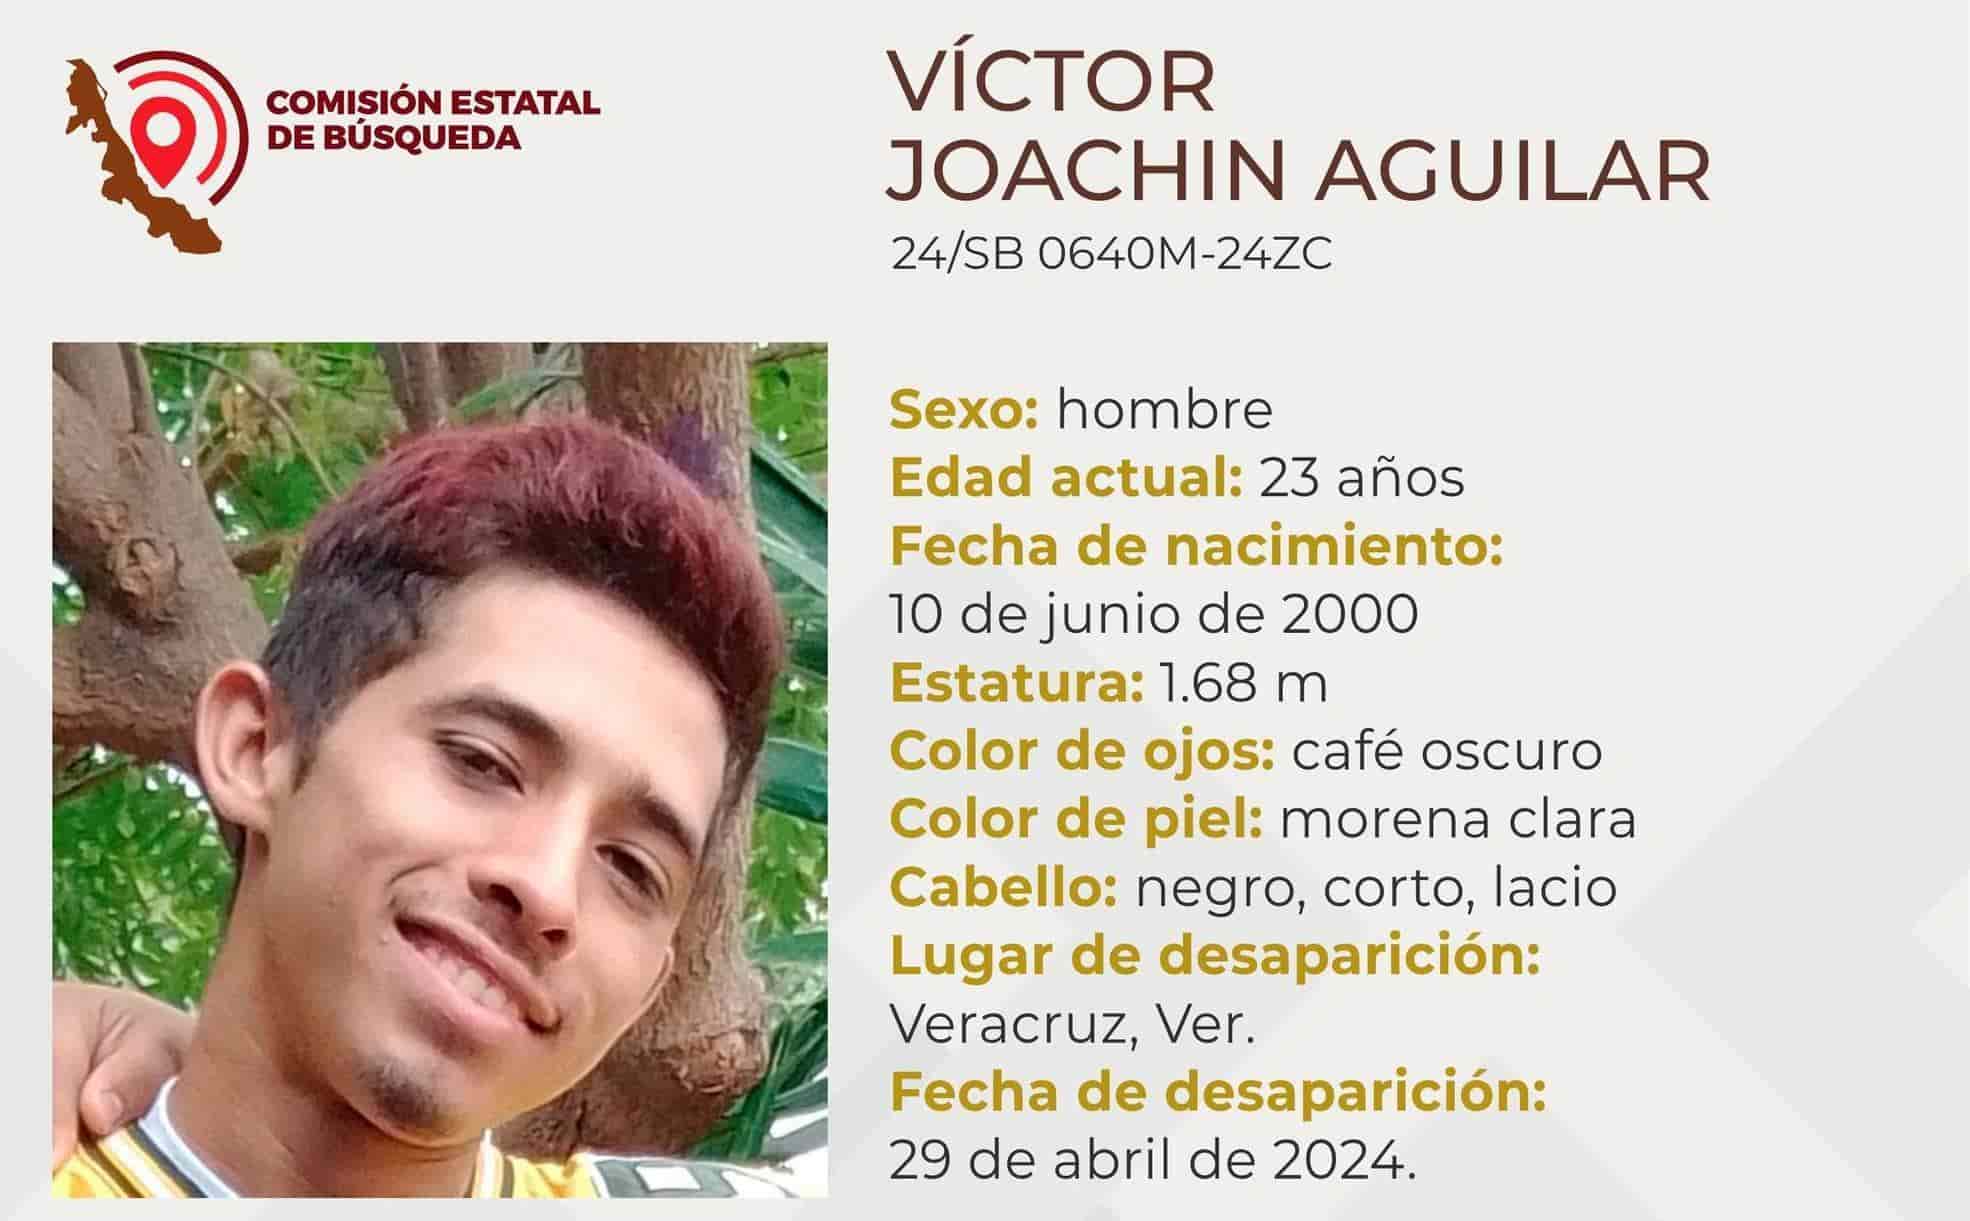 Desaparece el joven Víctor Joachín Aguilar en la ciudad de Veracruz